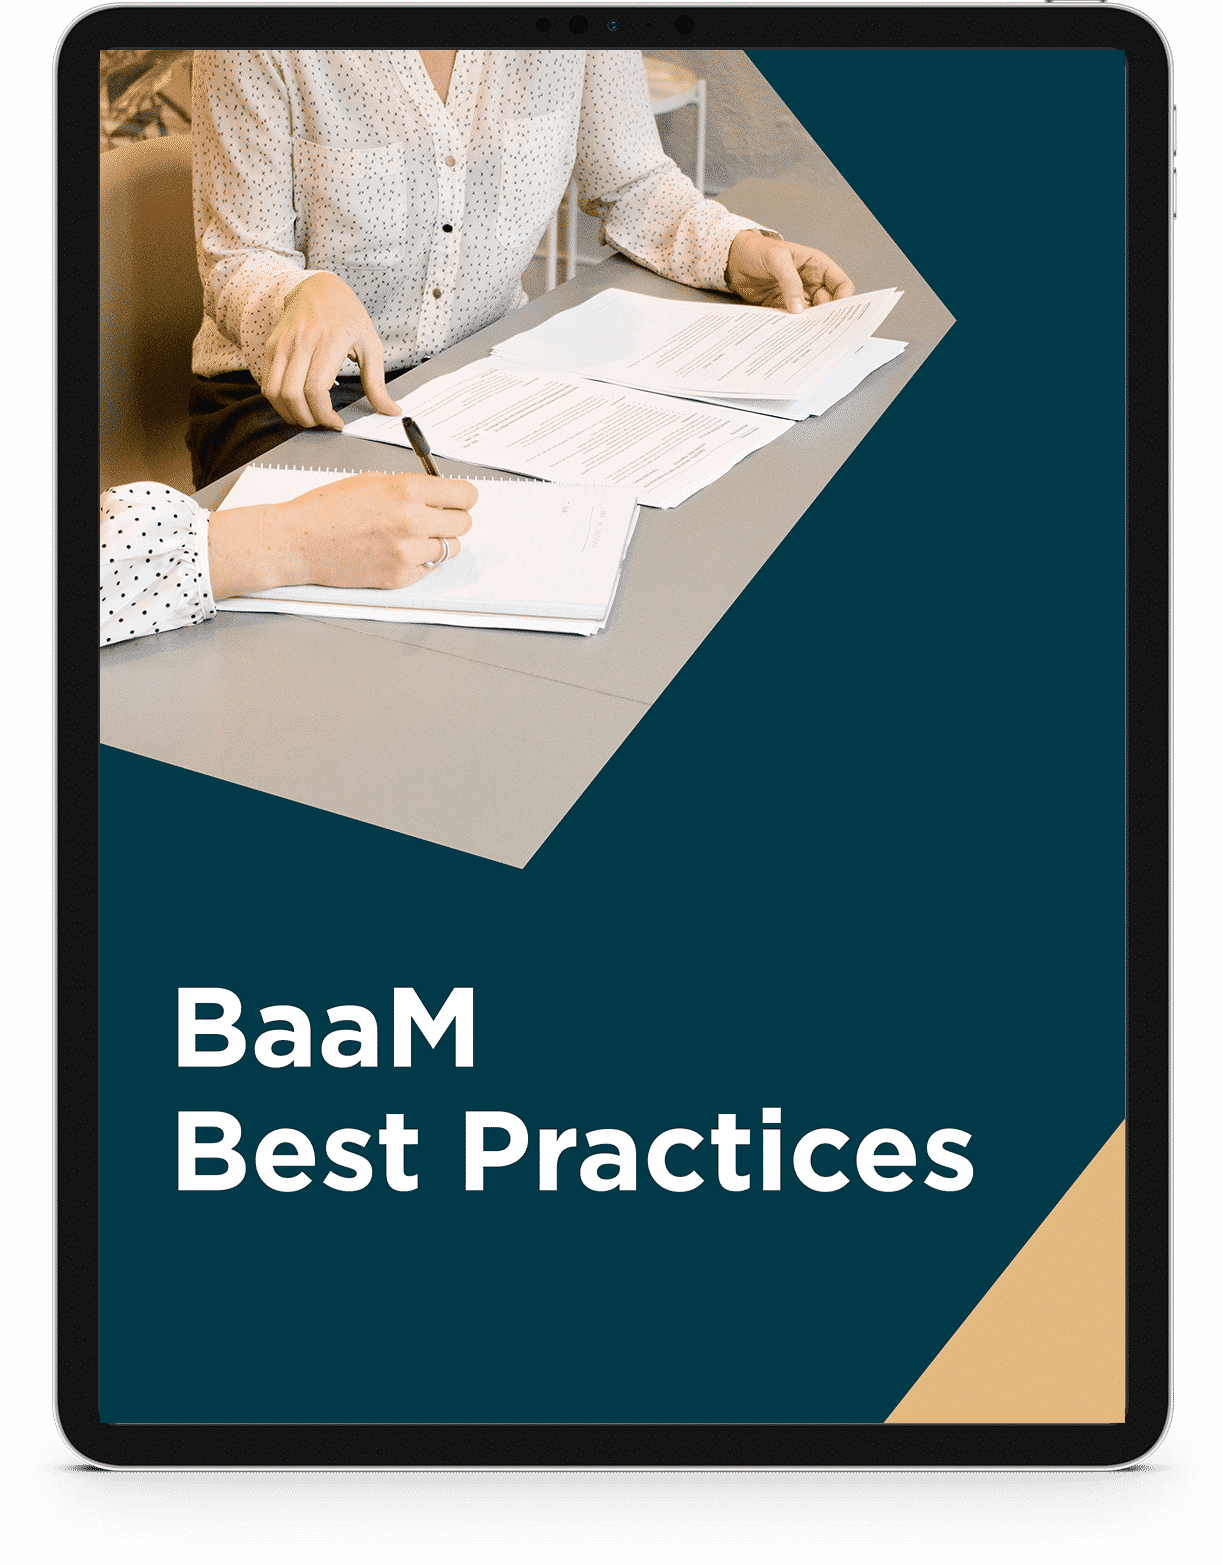 BaaM Best Practices Checklist